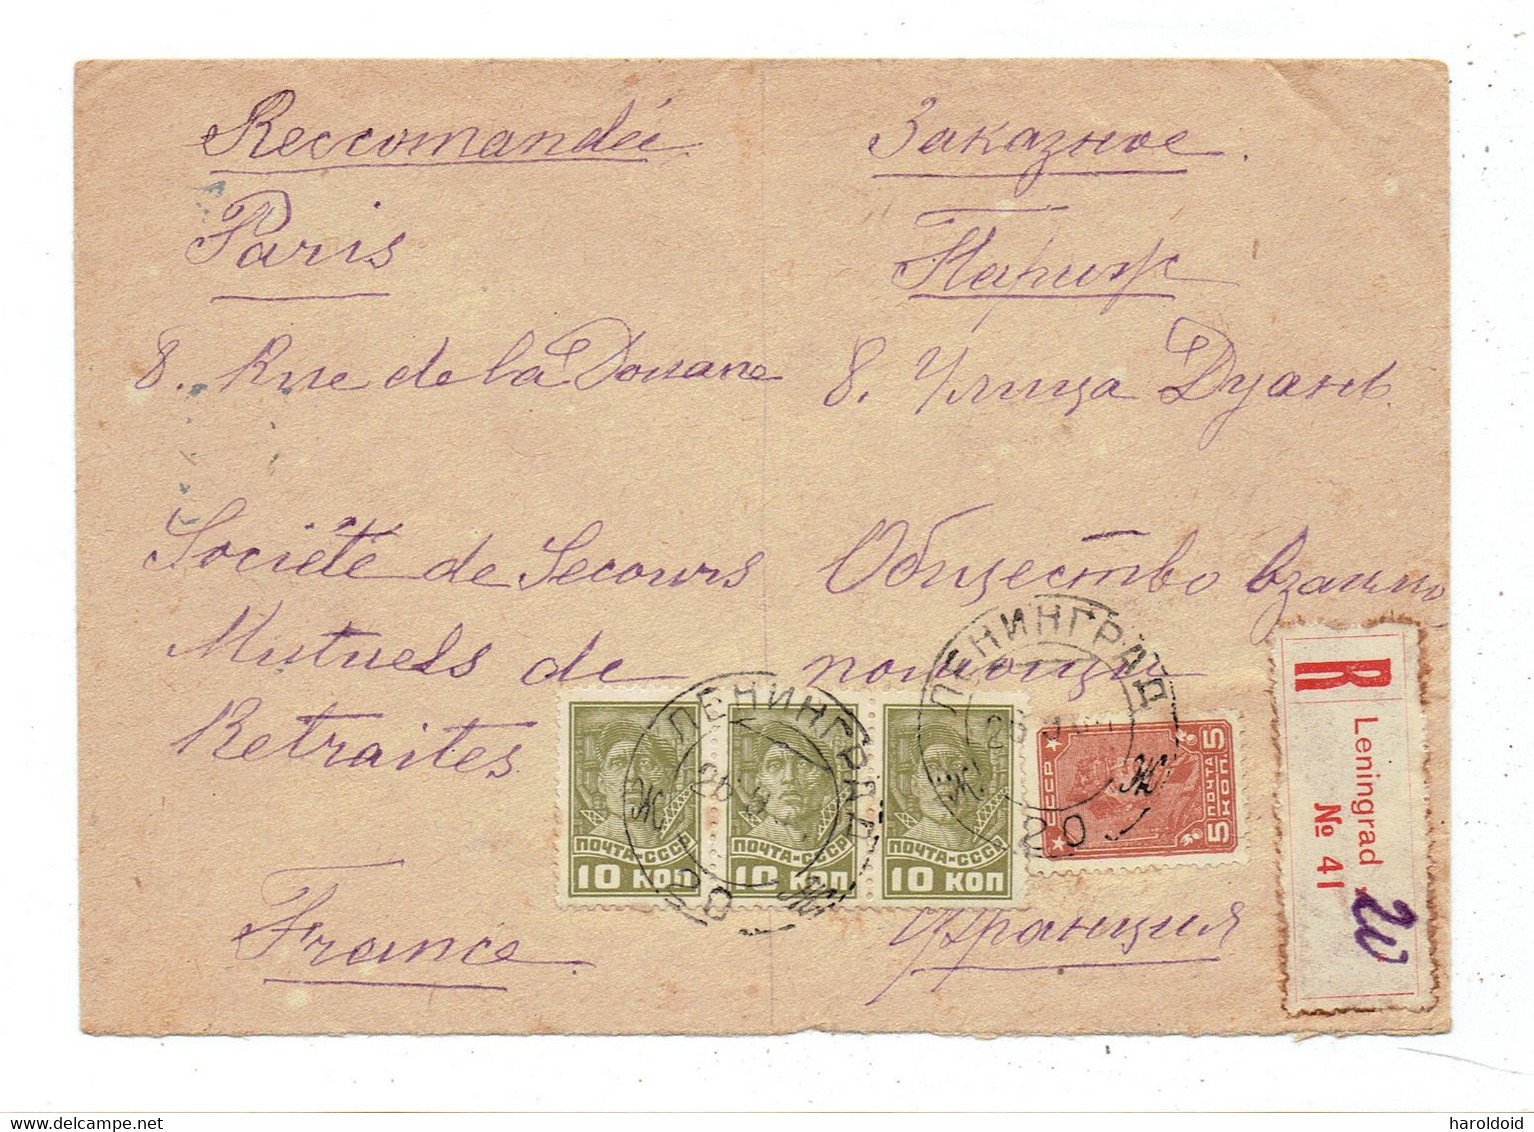 RUSSIE - LR LENINGRAD POUR PARIS 26/9/1934 + MARQUE AU DOS "ENDOMMAGE PLIS SALEMENT COLLES" - Covers & Documents